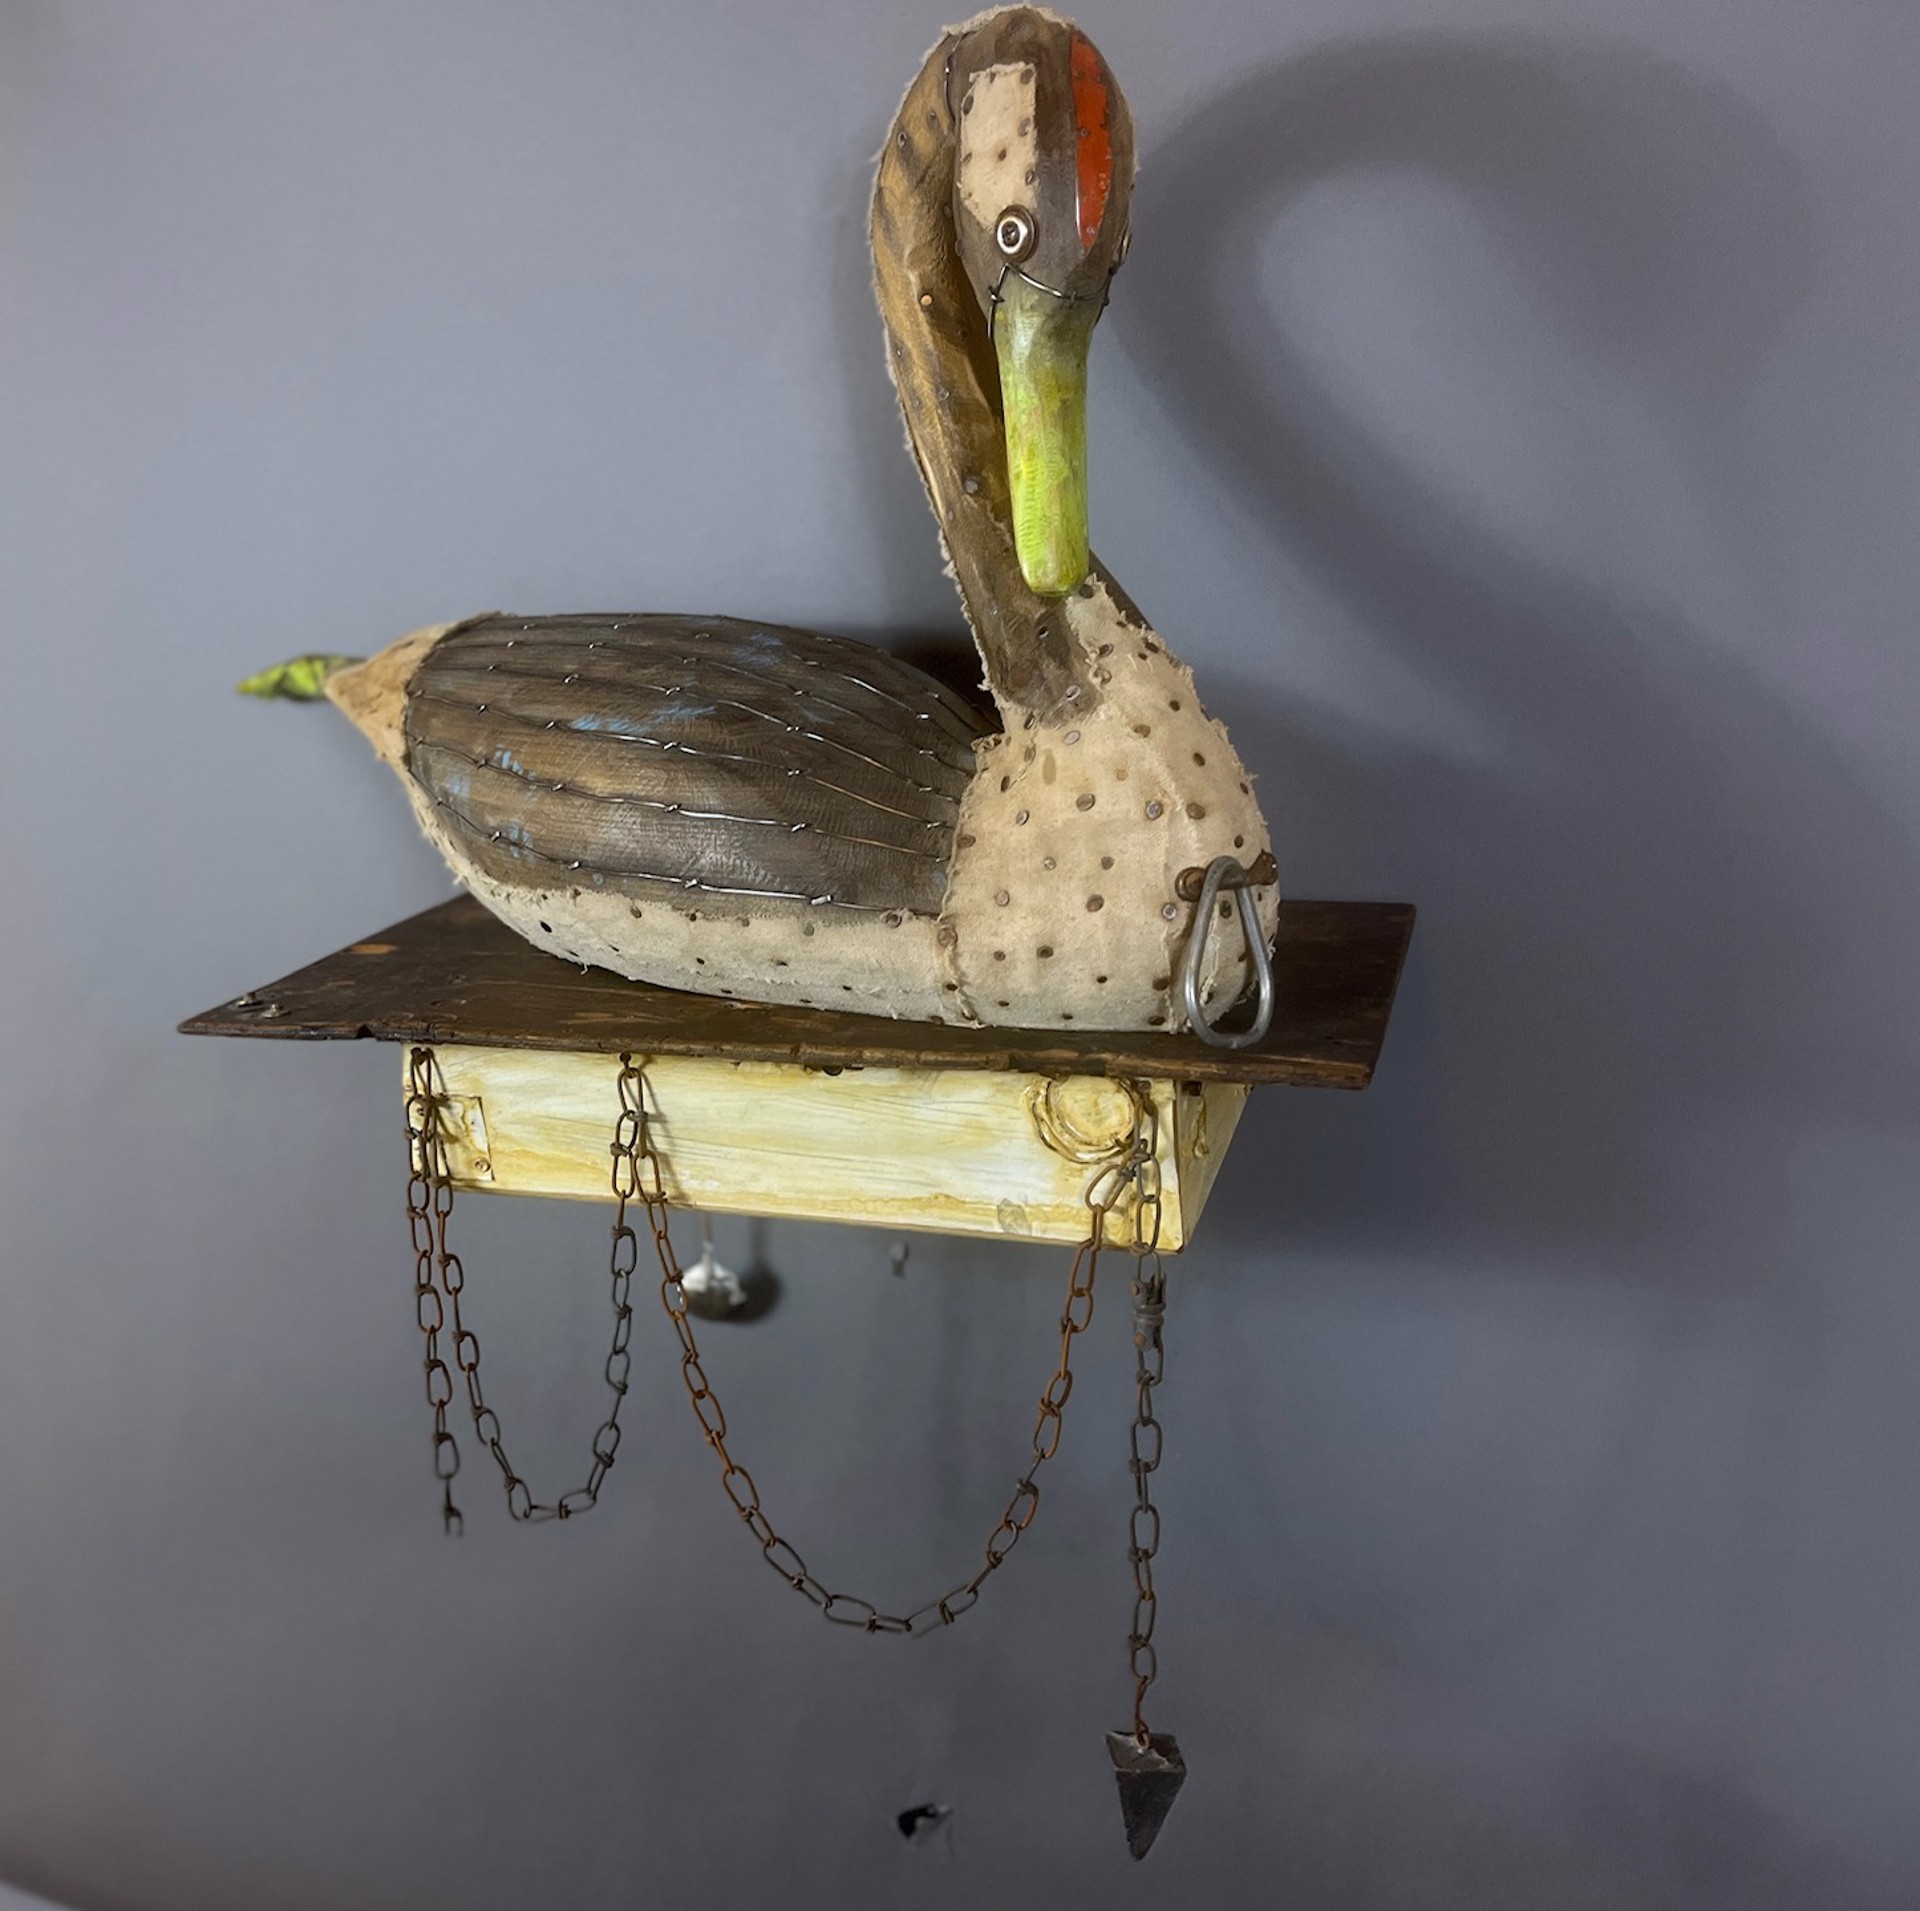 The Shy Swan by Geoffrey Gorman